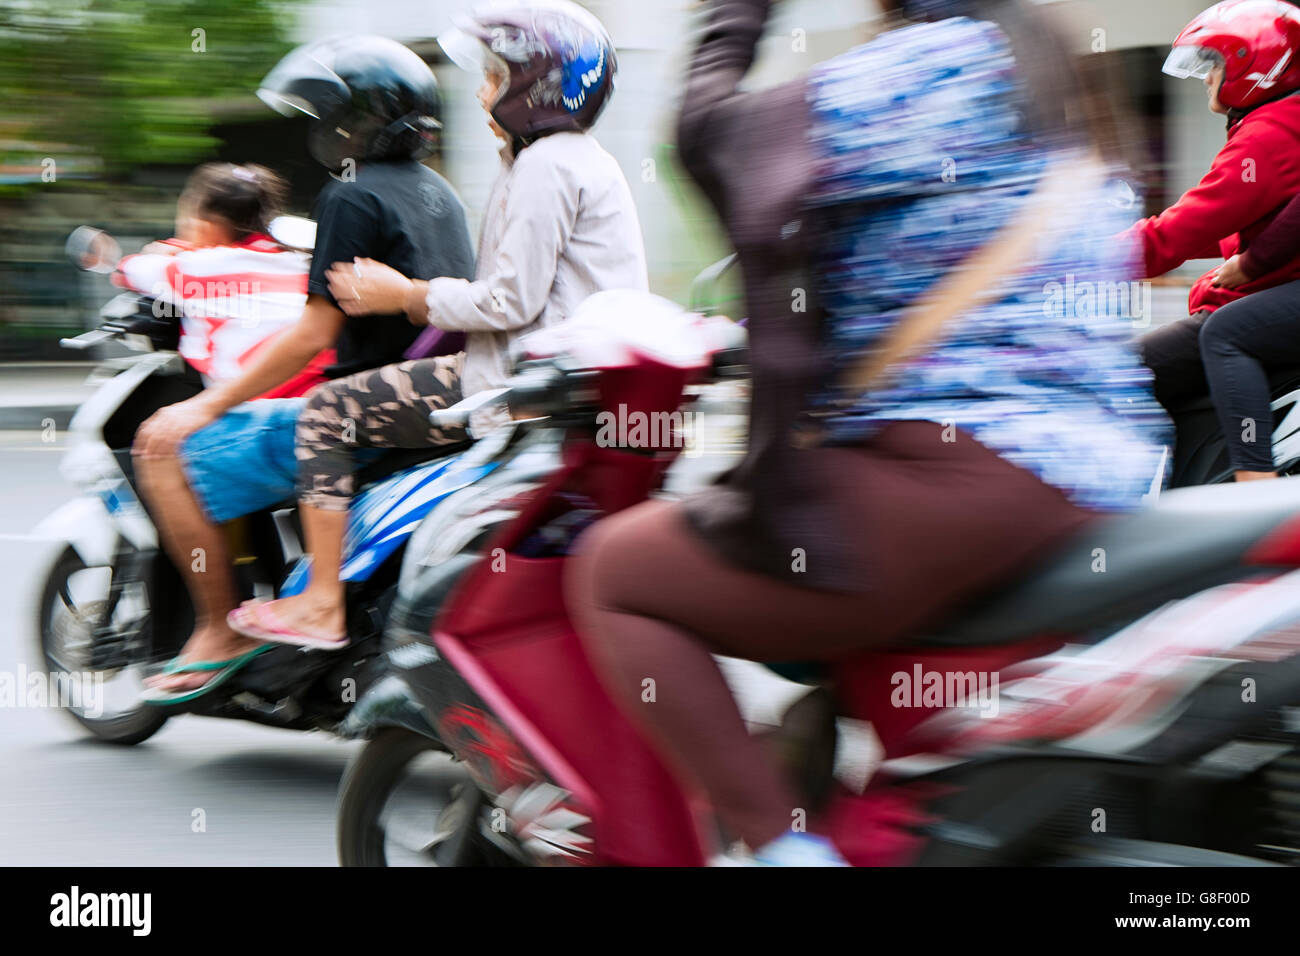 Motorbike traffic in Yogyakarta, Indonesia Stock Photo